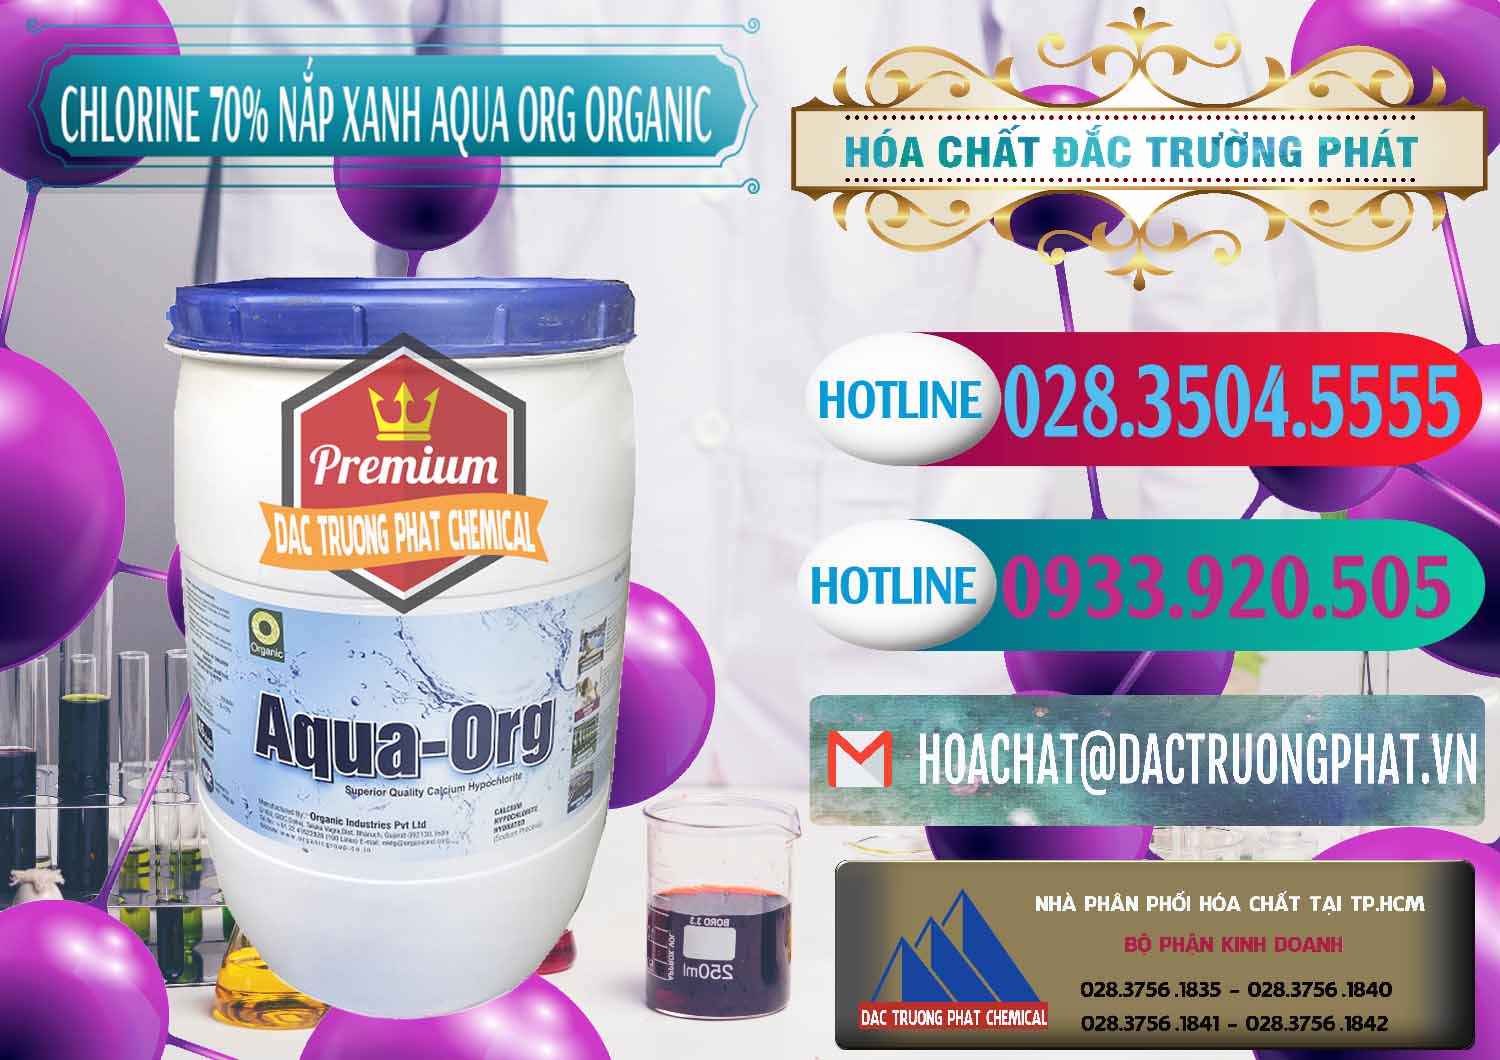 Cty bán & phân phối Chlorine – Clorin 70% Thùng Tròn Nắp Xanh Aqua ORG Organic Ấn Độ India - 0247 - Nhà cung cấp và nhập khẩu hóa chất tại TP.HCM - truongphat.vn